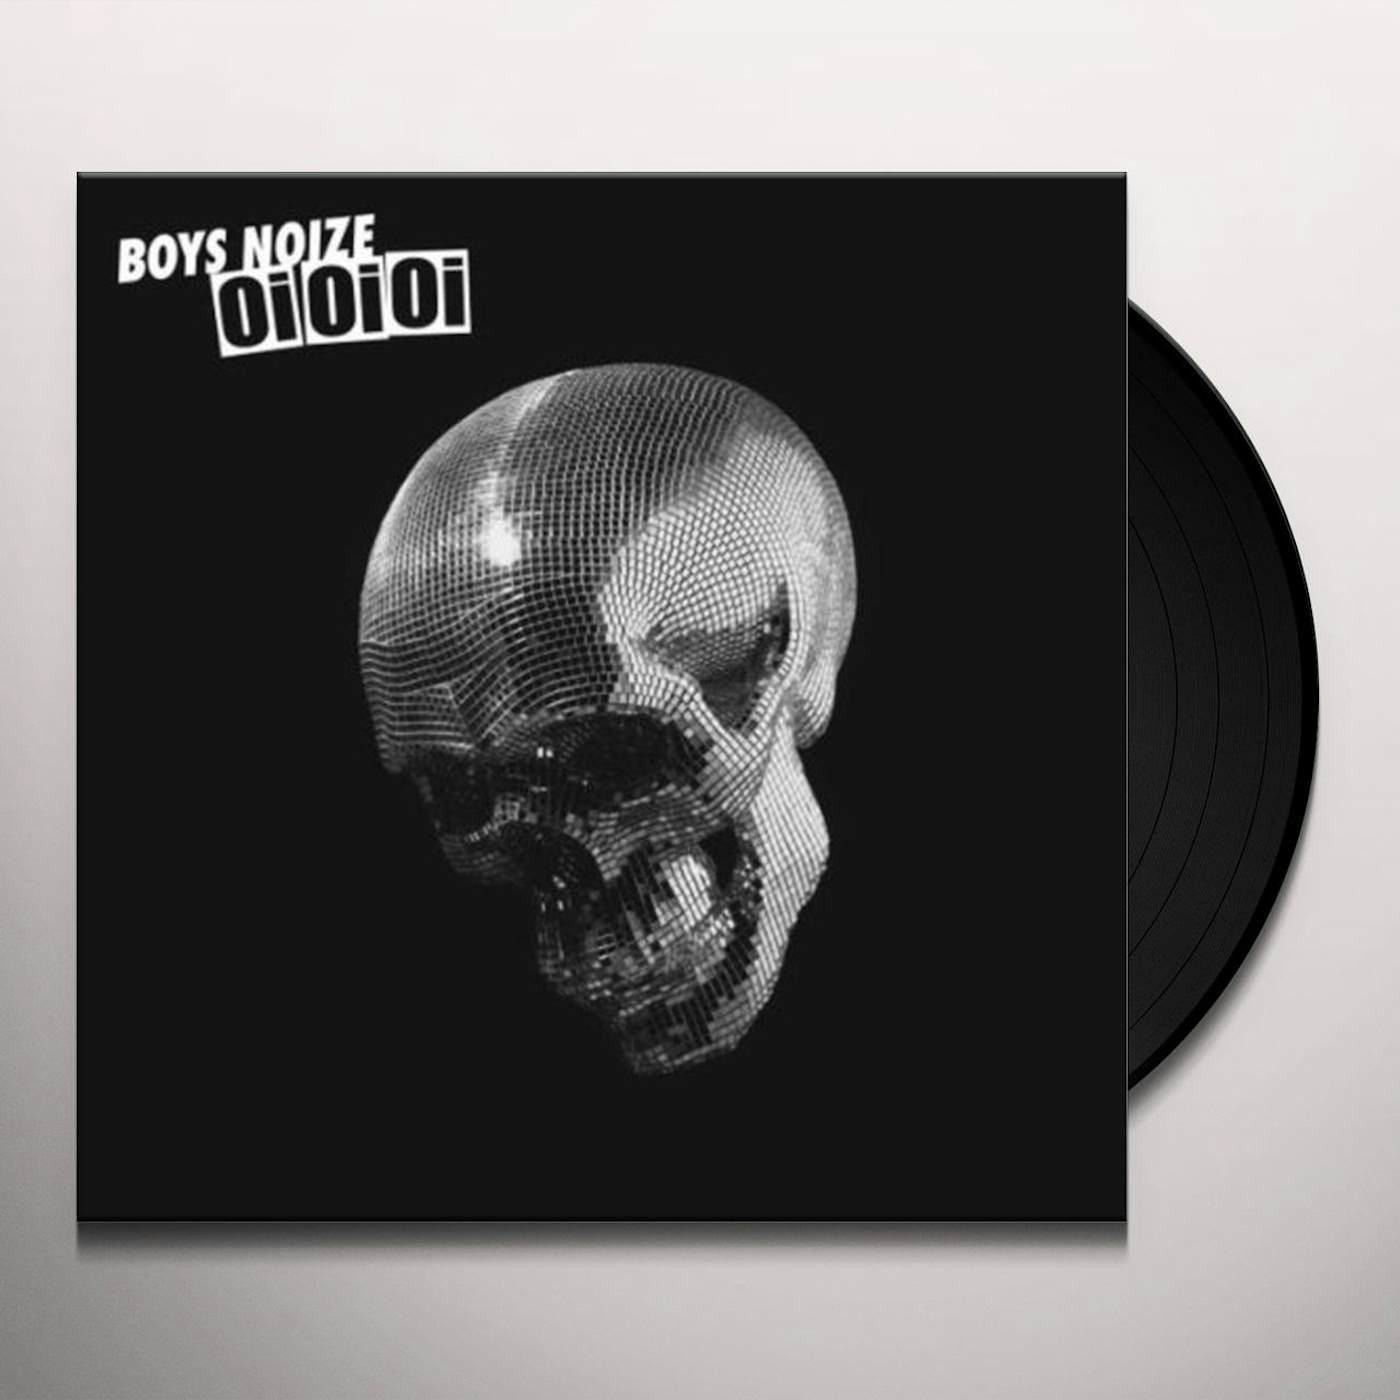 Boys Noize OI OI OI Vinyl Record